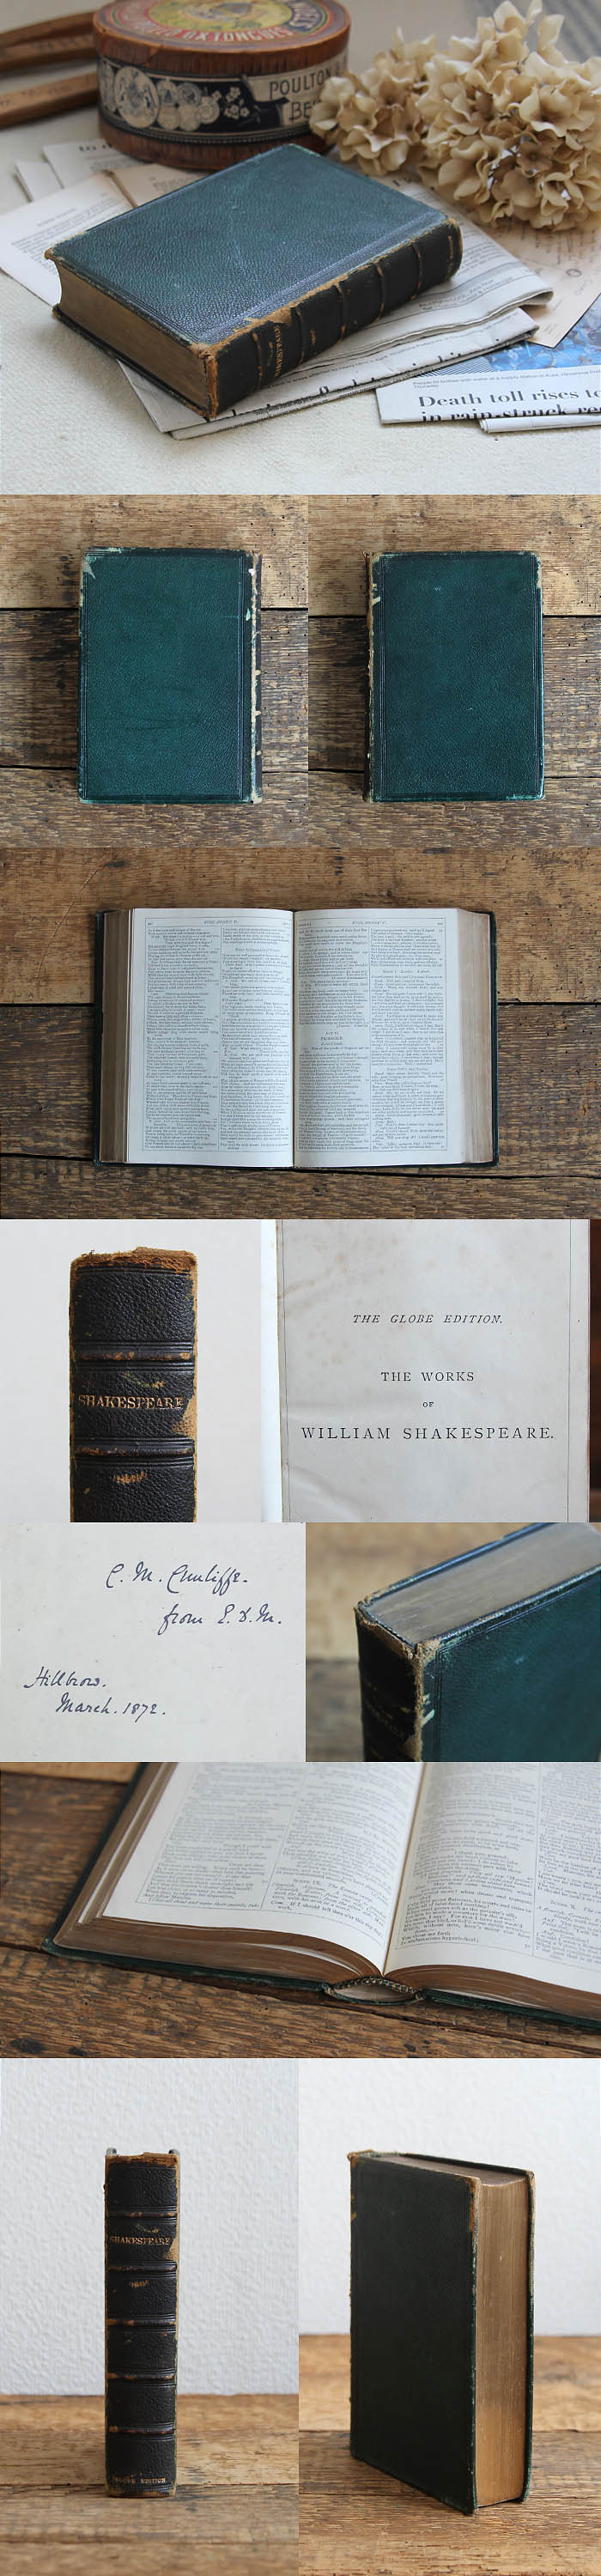 イギリス アンティークブック 古書 インテリア雑貨 洋書 ウィリアム・シェイクスピア「Shakespeare」V-928